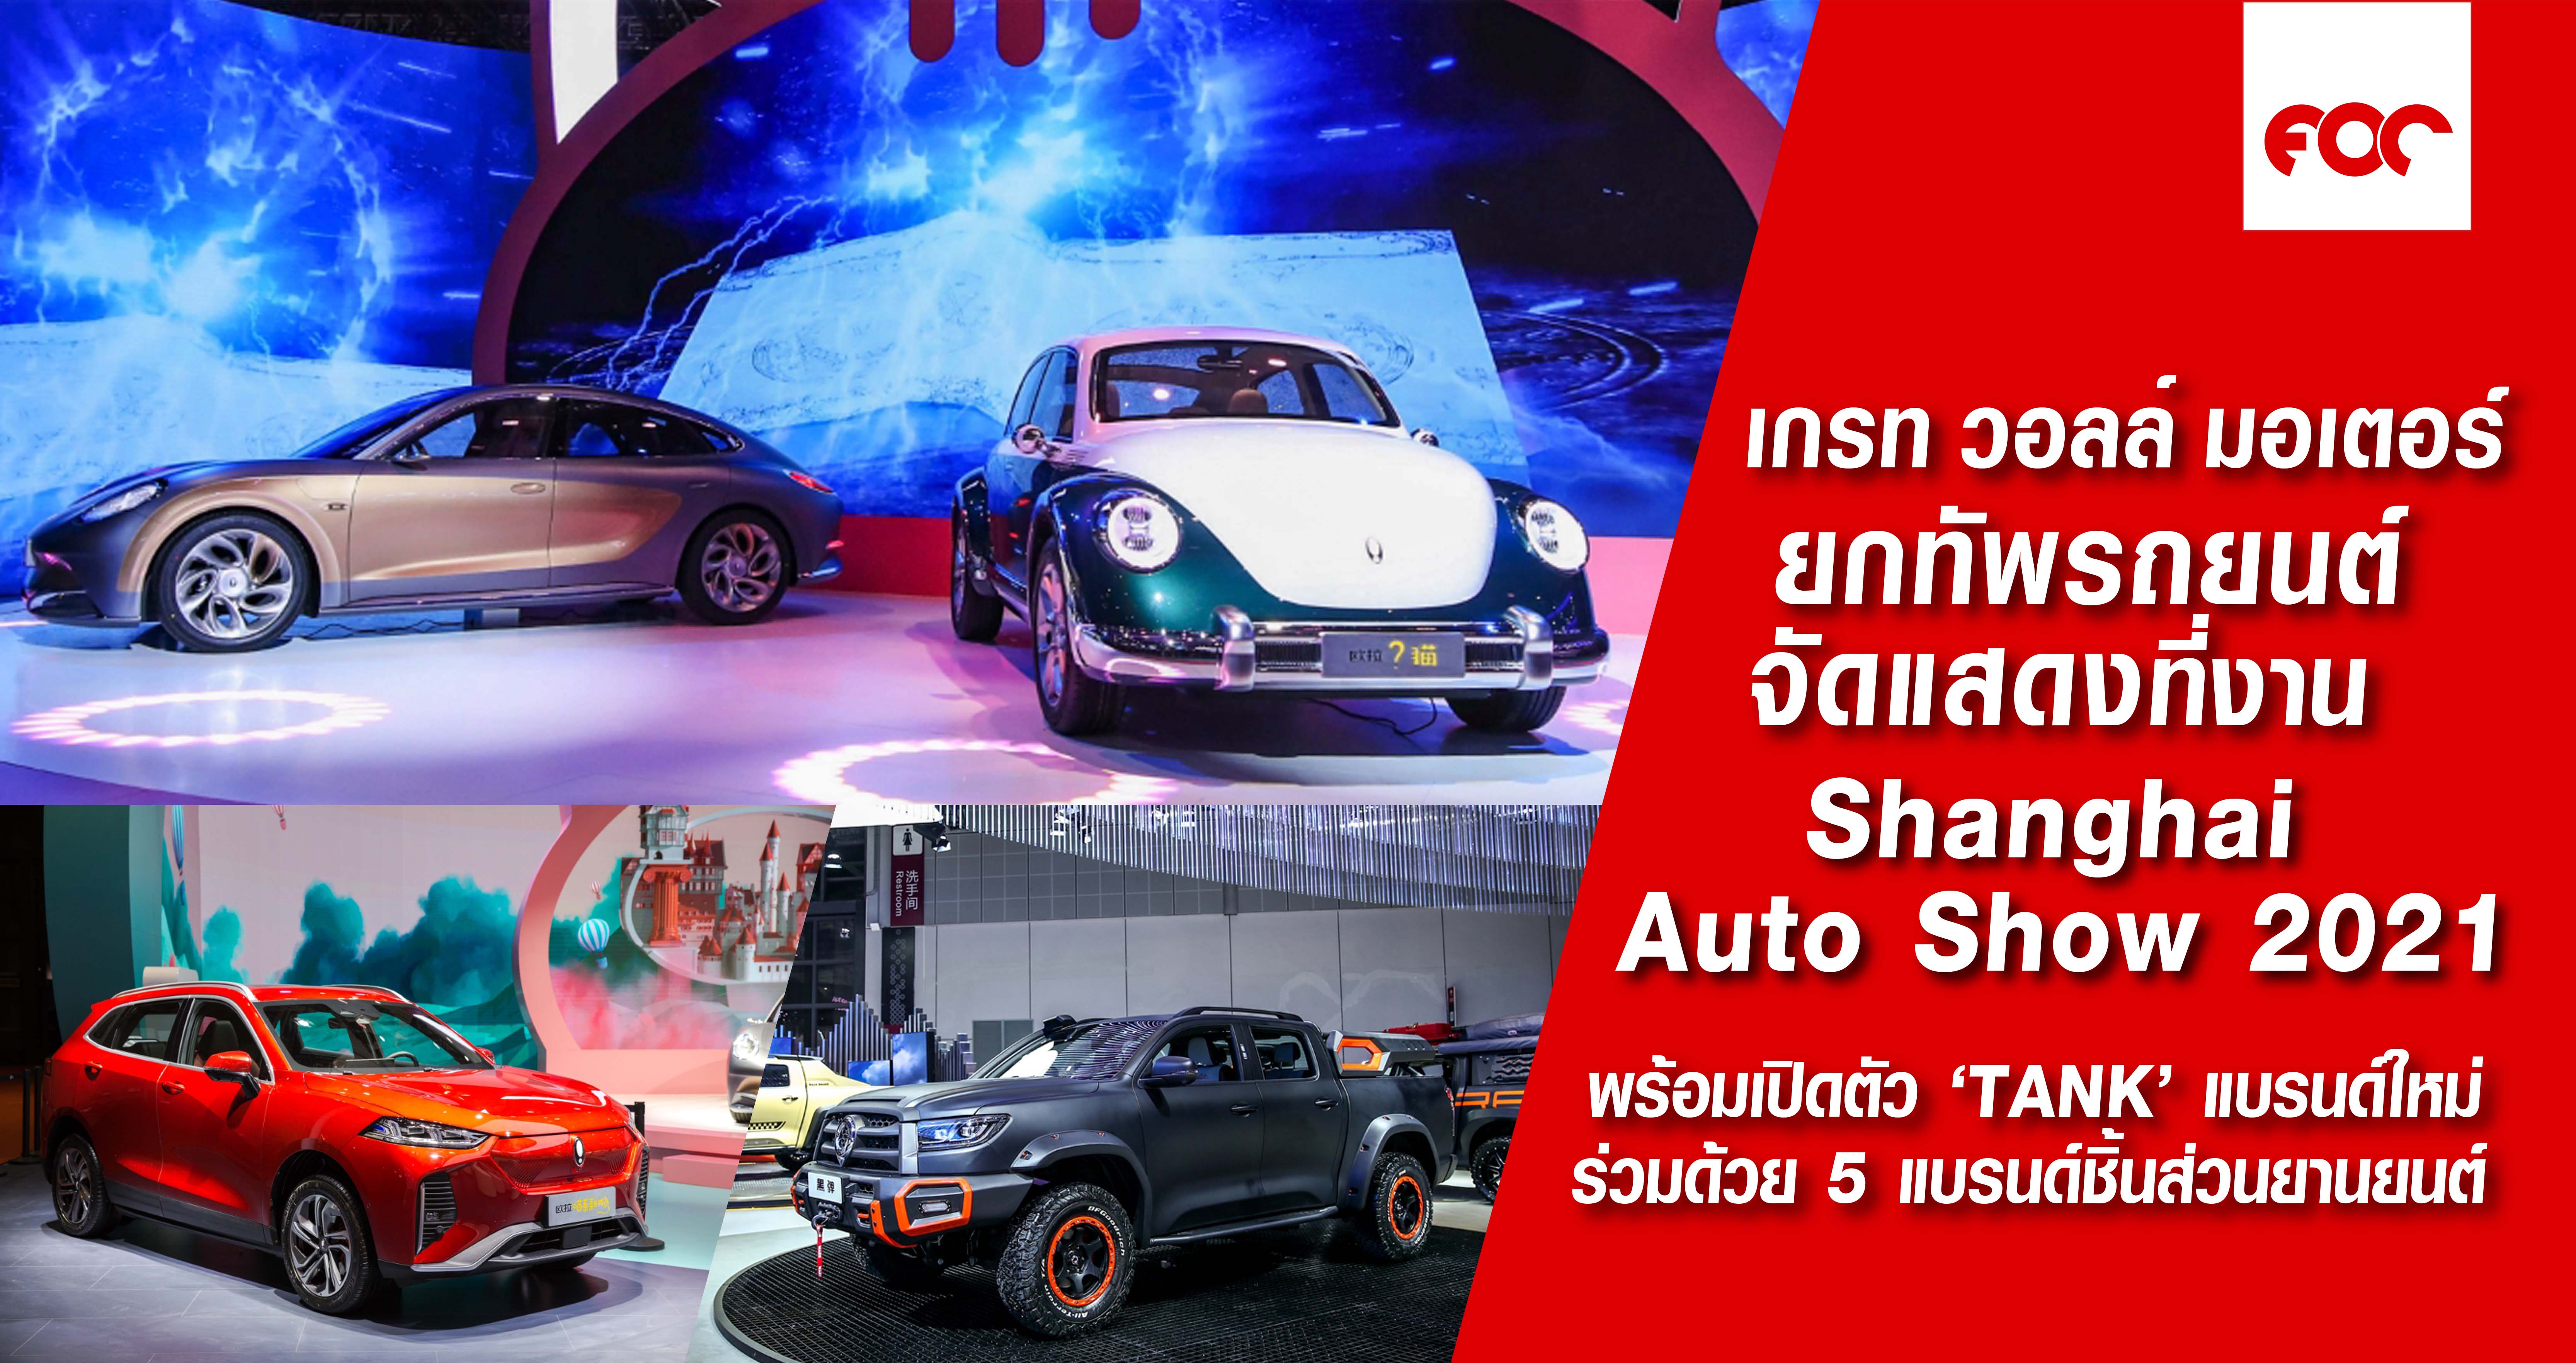 เกรท วอลล์ มอเตอร์ นำทัพรถยนต์อันล้ำสมัยจัดแสดงในงาน  Shanghai International Automobile Industry Exhibition ครั้งที่ 19  พร้อมเปิดตัว ‘TANK’ แบรนด์น้องใหม่ล่าสุด ร่วมด้วย 5 แบรนด์ชิ้นส่วนยานยนต์ ร่วมสร้าง Ecosystem แห่งอุตสาหกรรมยานยนต์ที่สมบูรณ์แบบ